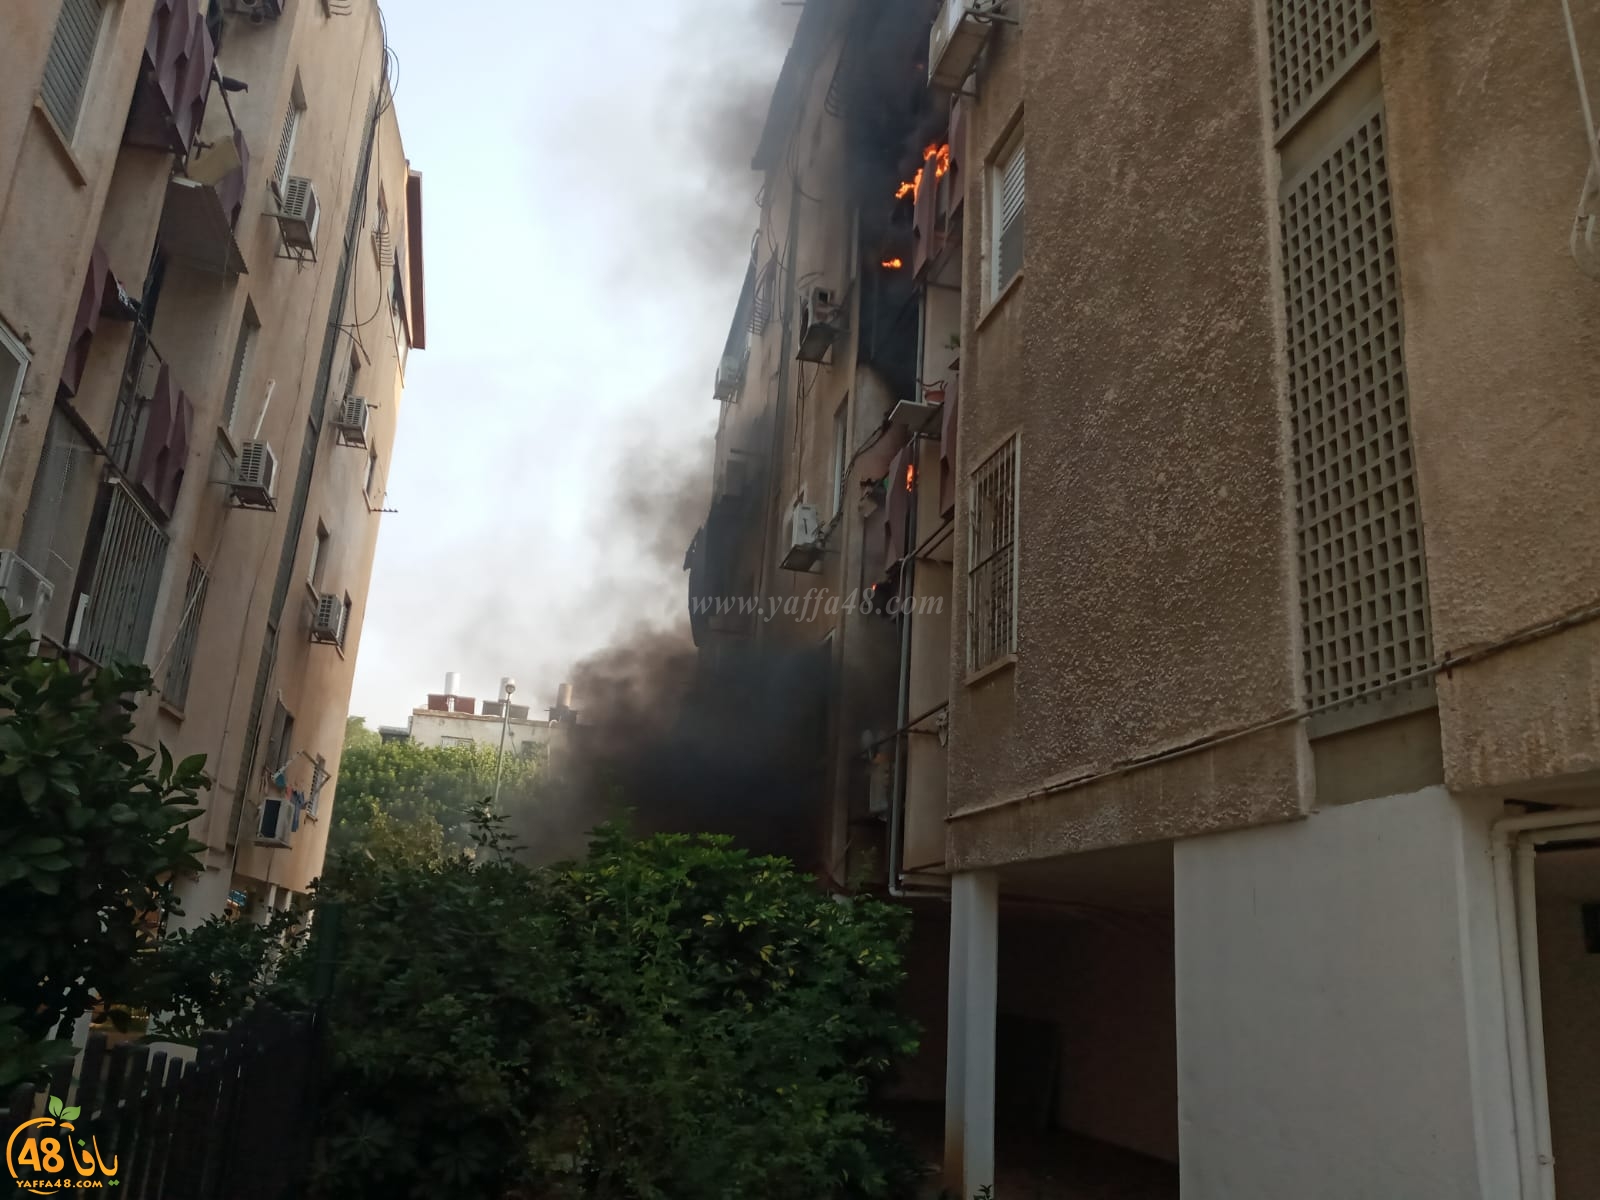   فيديو: حريق داخل بناية سكنية بيافا يتسبب بأضرار مادية لخمس شقق